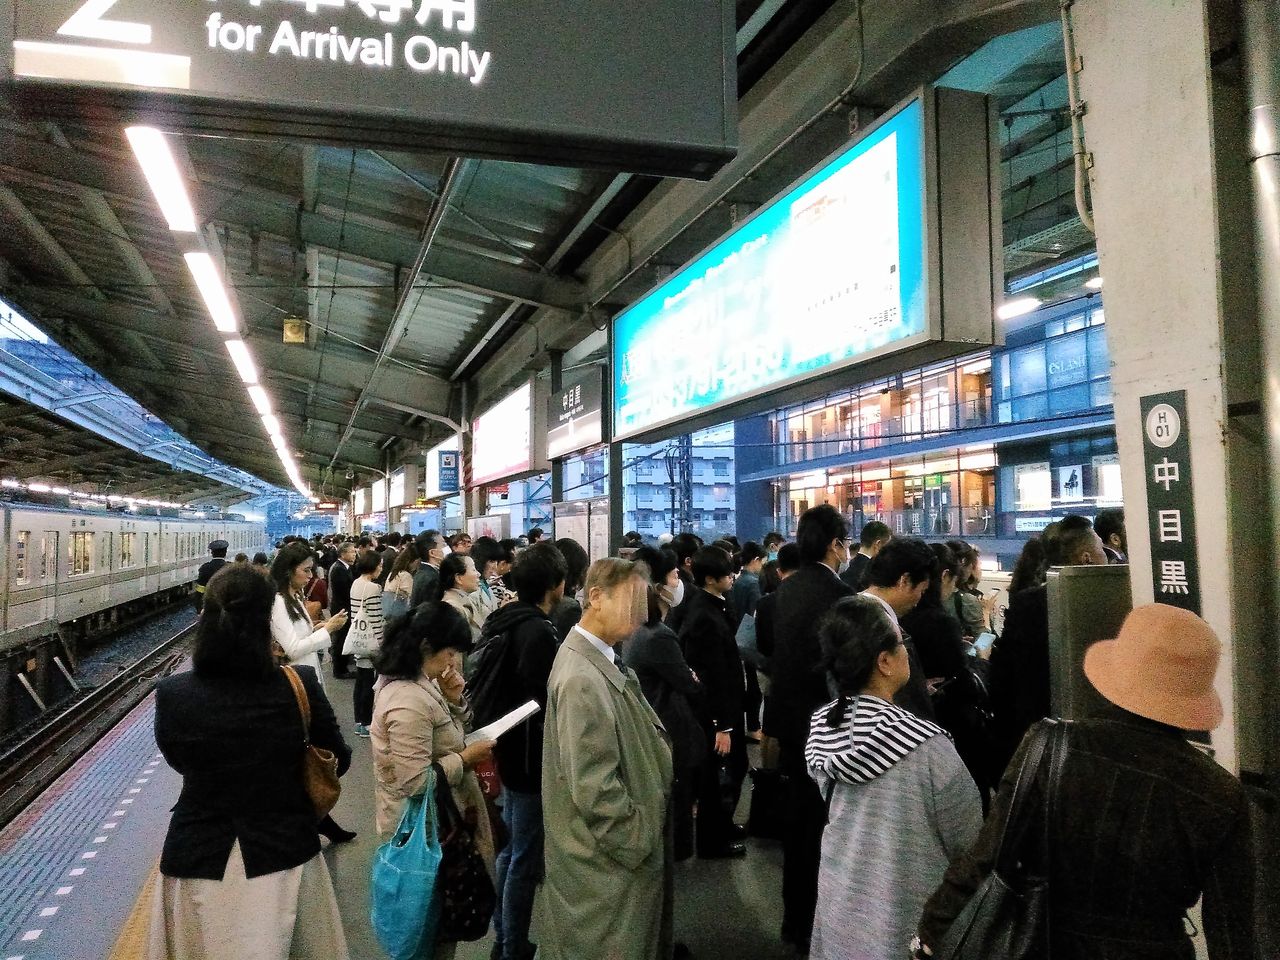 東急東横線 その3 夕ラッシュ時混雑 中目黒駅での乗降観察 Shinoの鉄道ブログ